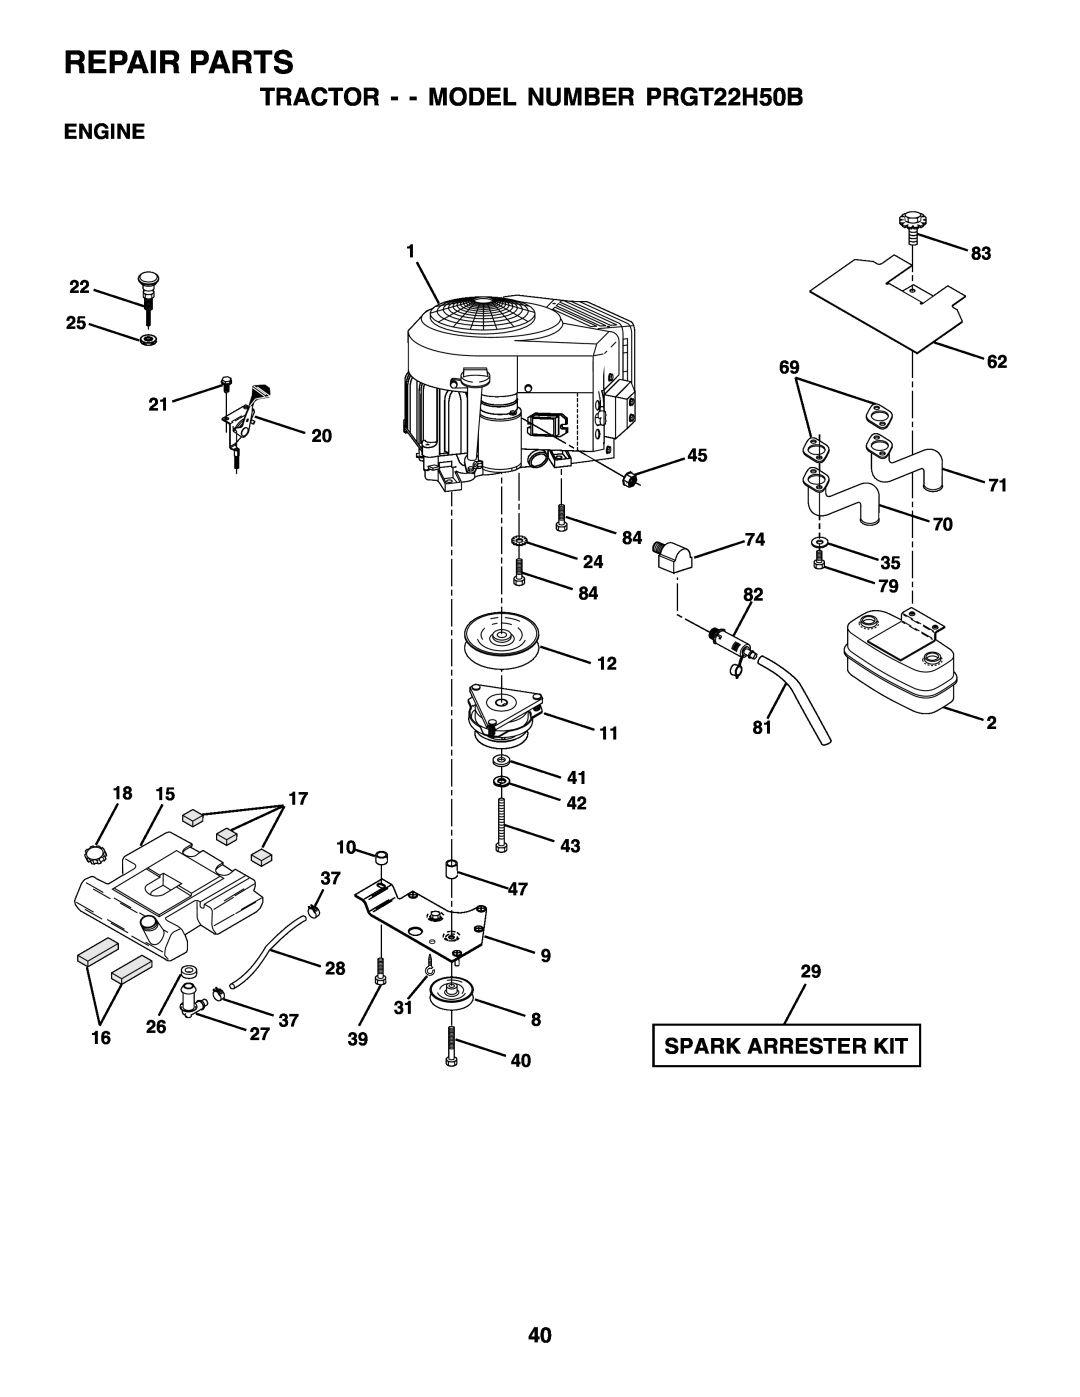 Poulan owner manual Repair Parts, TRACTOR - - MODEL NUMBER PRGT22H50B, Engine, Spark Arrester Kit, 6962 